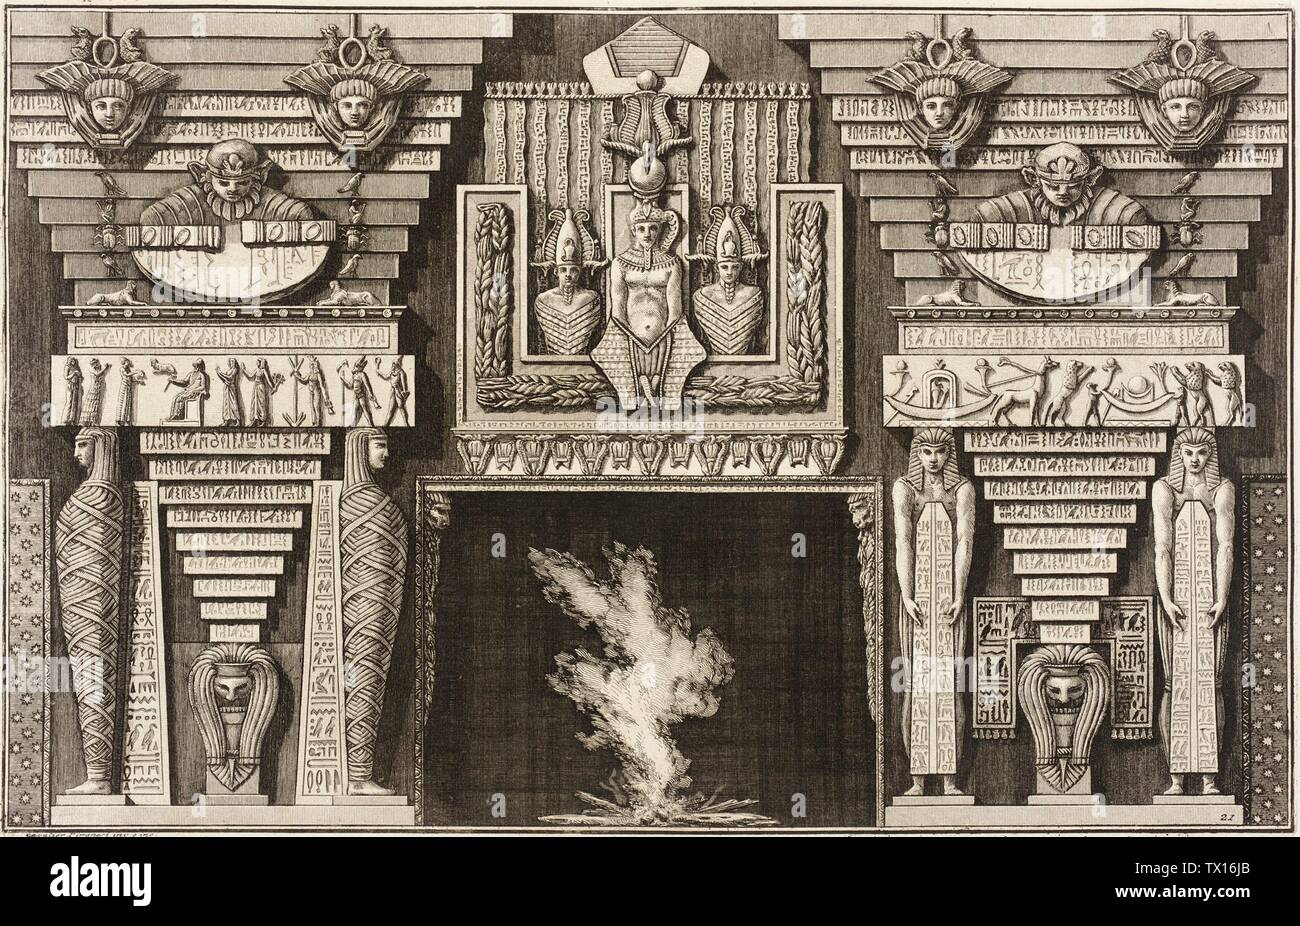 Chimneypiece in stile egiziano: Due mummie in profilo a sinistra e due figure che portano obelischi a destra.; Italia, 1769 Serie: Divorre Maniere d'ornare i cammini... Stampe; incisioni foglio Di Incisione: 16 1/8 x 21 3/4 in. (40,96 x 55,24 cm); piastra: 15 3/8 x 9 7/8 in. (39,05 x 25,08 cm) Acquistato con fondi raccolti attraverso la Fiera Internazionale delle Stampa di fine Art (AC1999.142.1) stampe e Disegni; 1769date QS:P571,+1769-00-00T00:00:00Z/9; Foto Stock